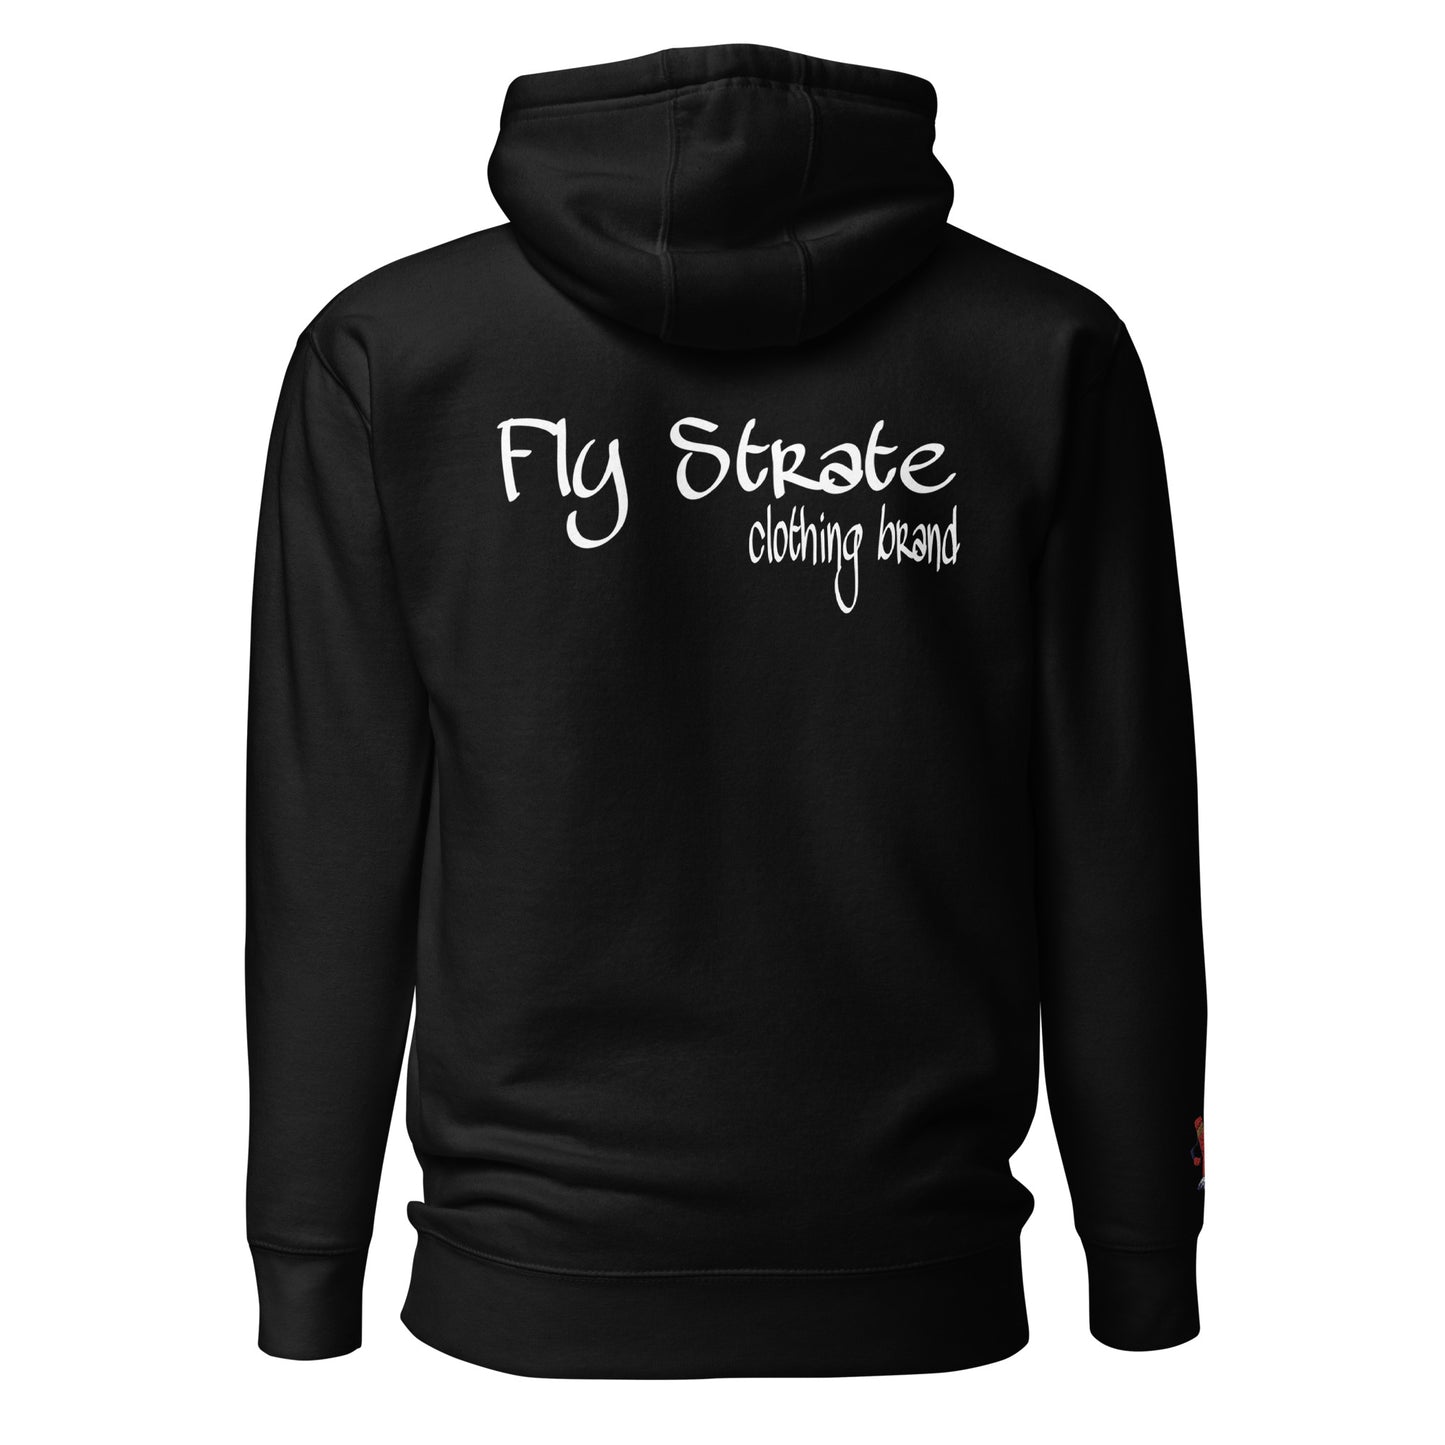 Flystrate guardian hoodie